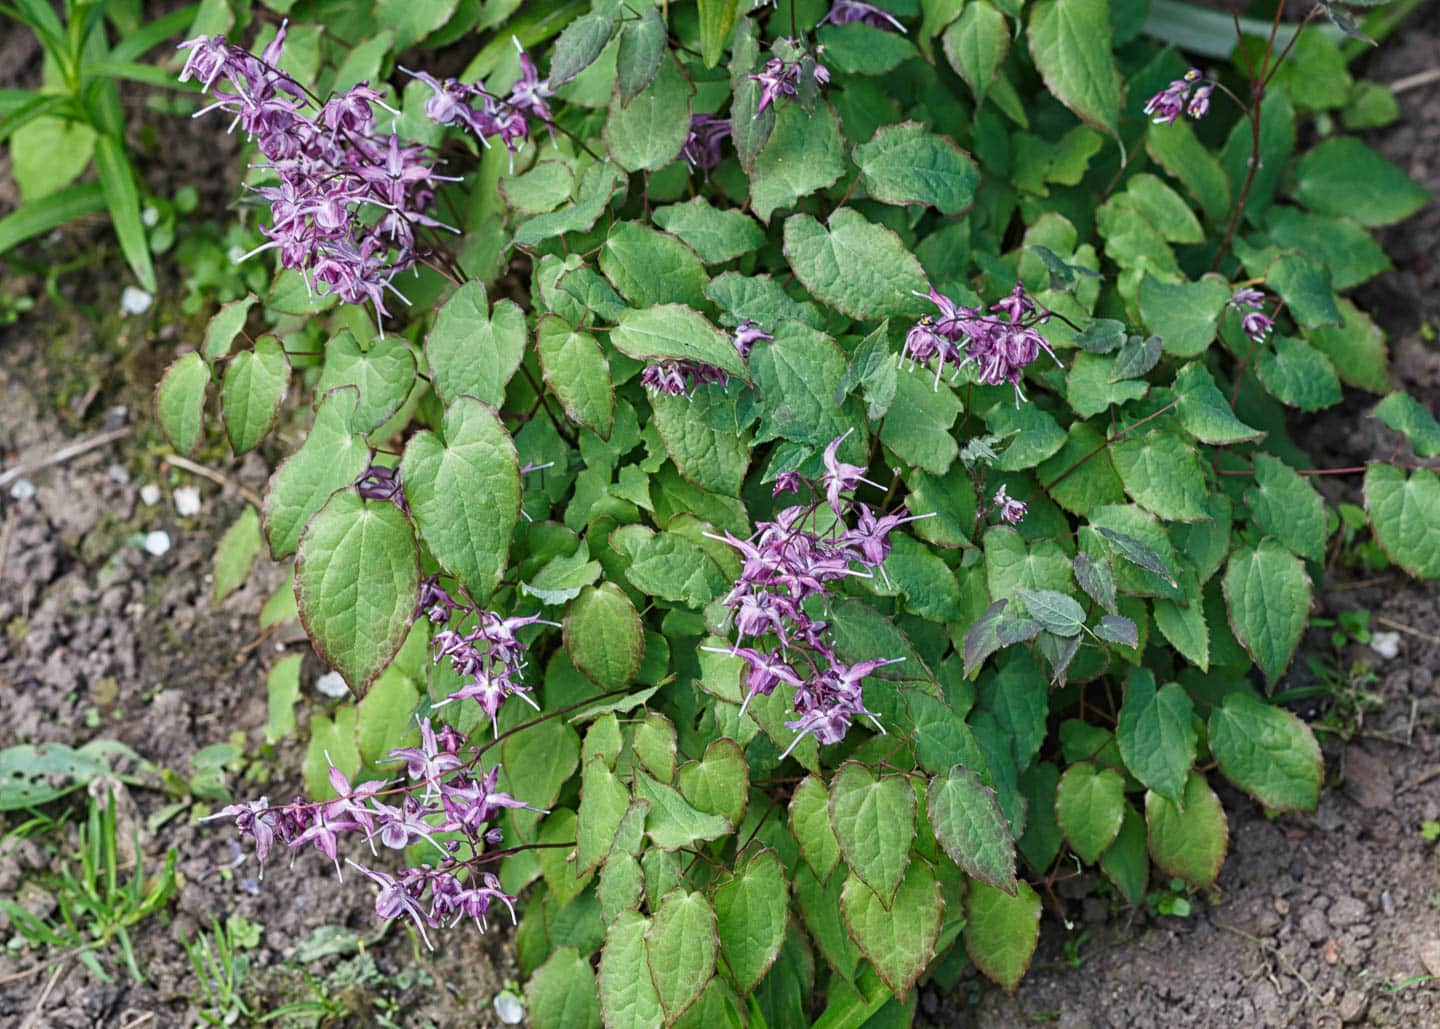 Barrenwort with purple flowers